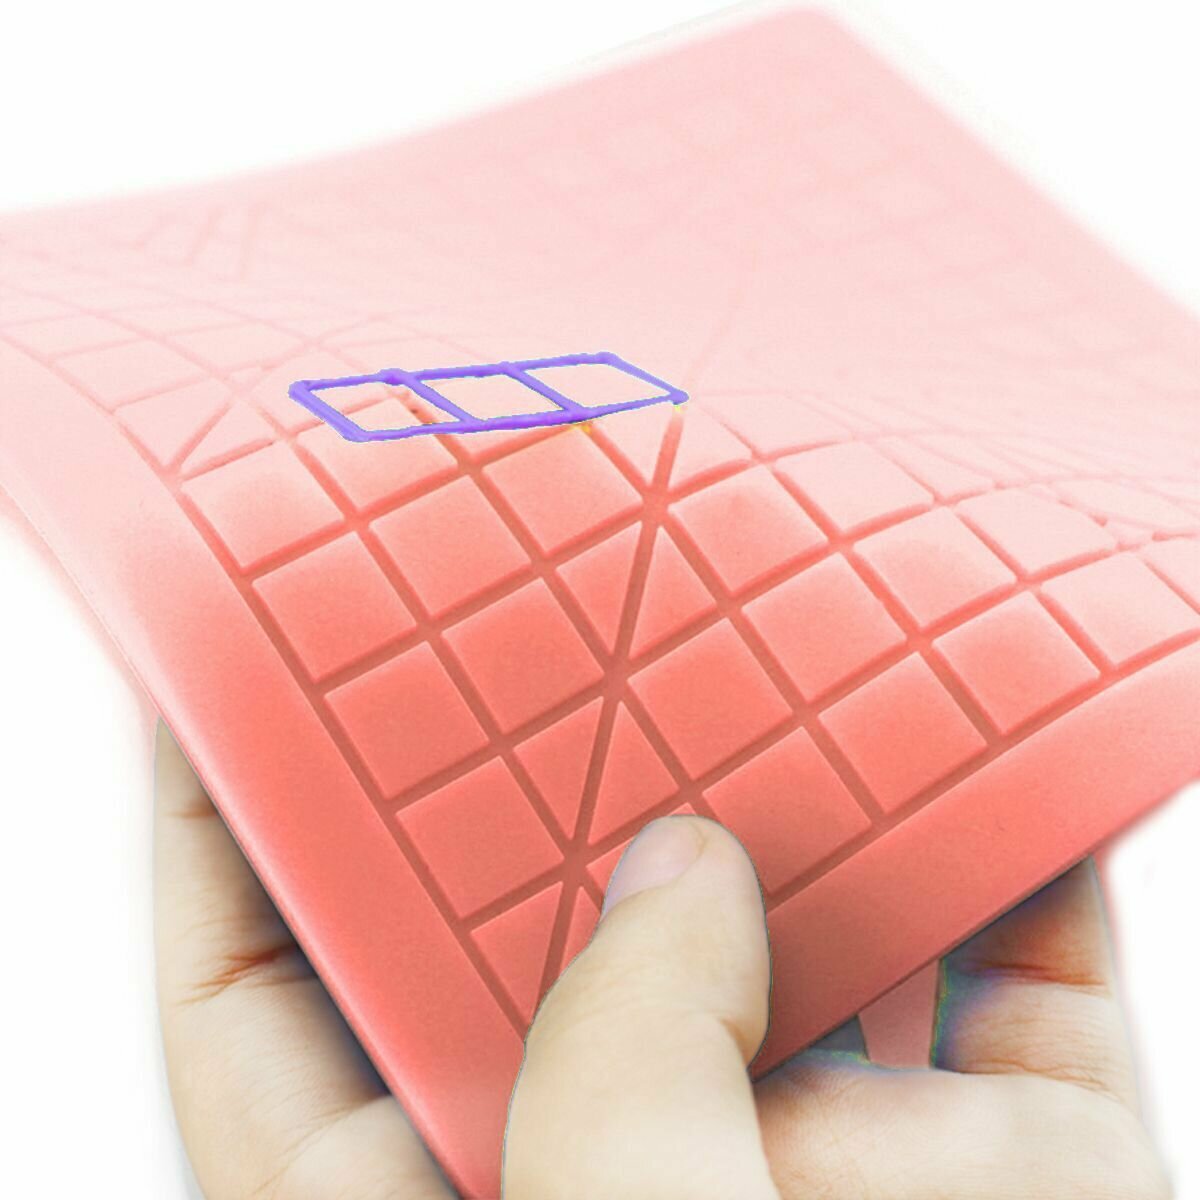 Коврик для 3д ручки силиконовый набор для 3d рисования / термостойкий силиконовый коврик для 3d ручки + защитные напальчники / Розовый